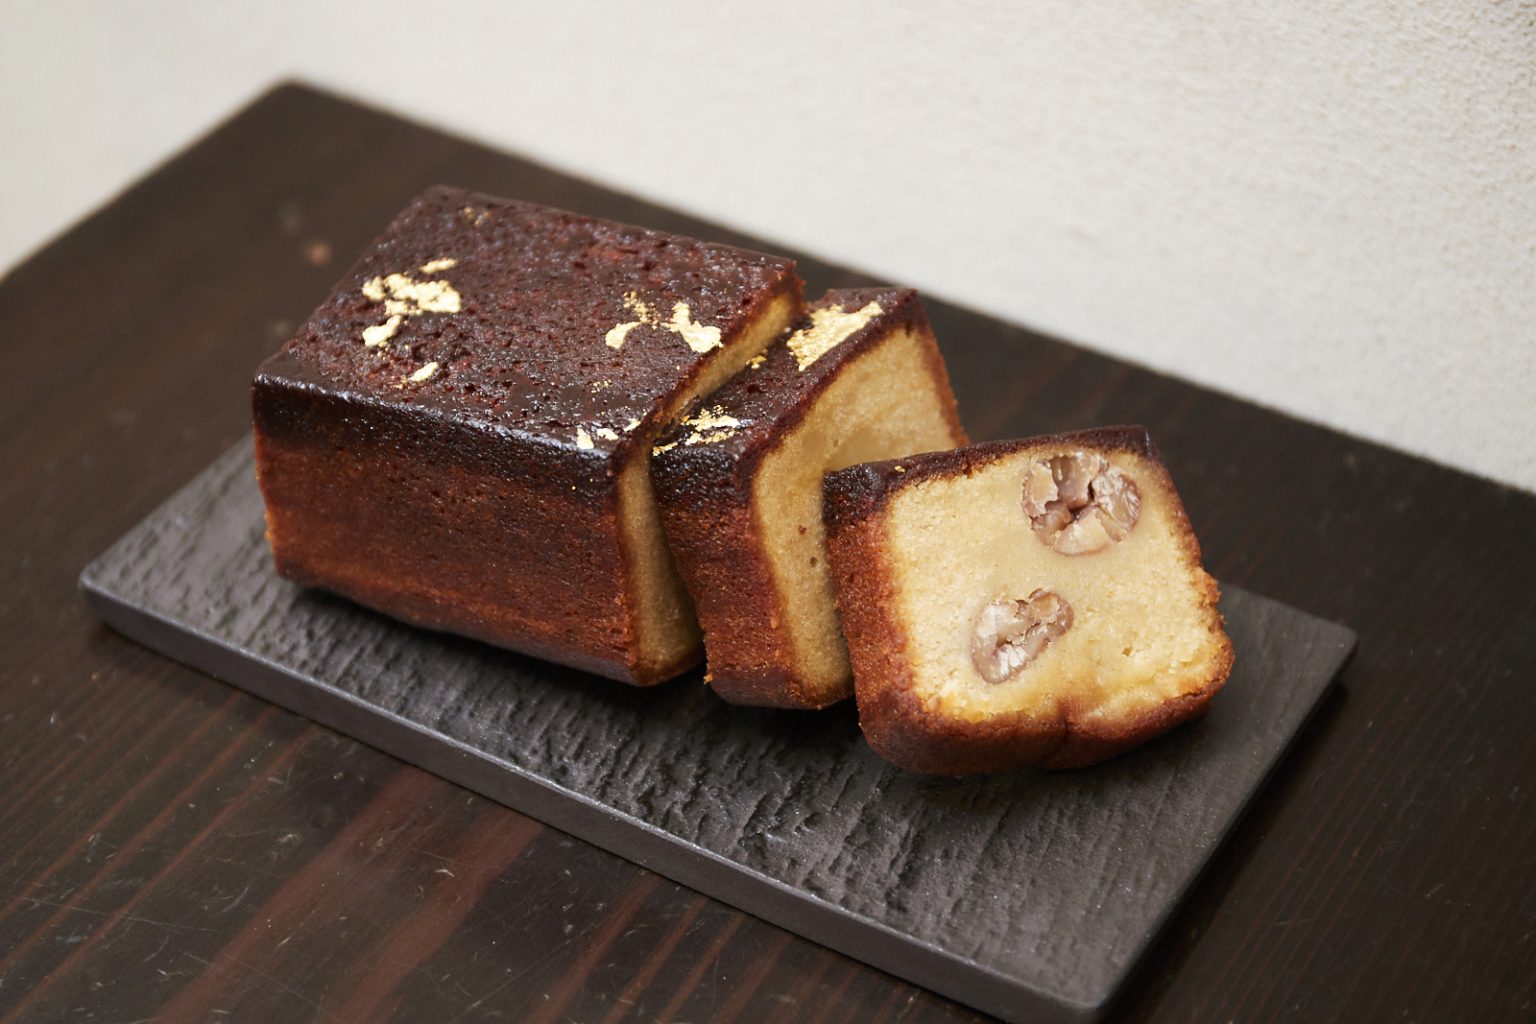 「和栗のテリーヌ」テリーヌ型で焼き上げたケーキ。栗がごろごろ。ハーフサイズ5,400円。